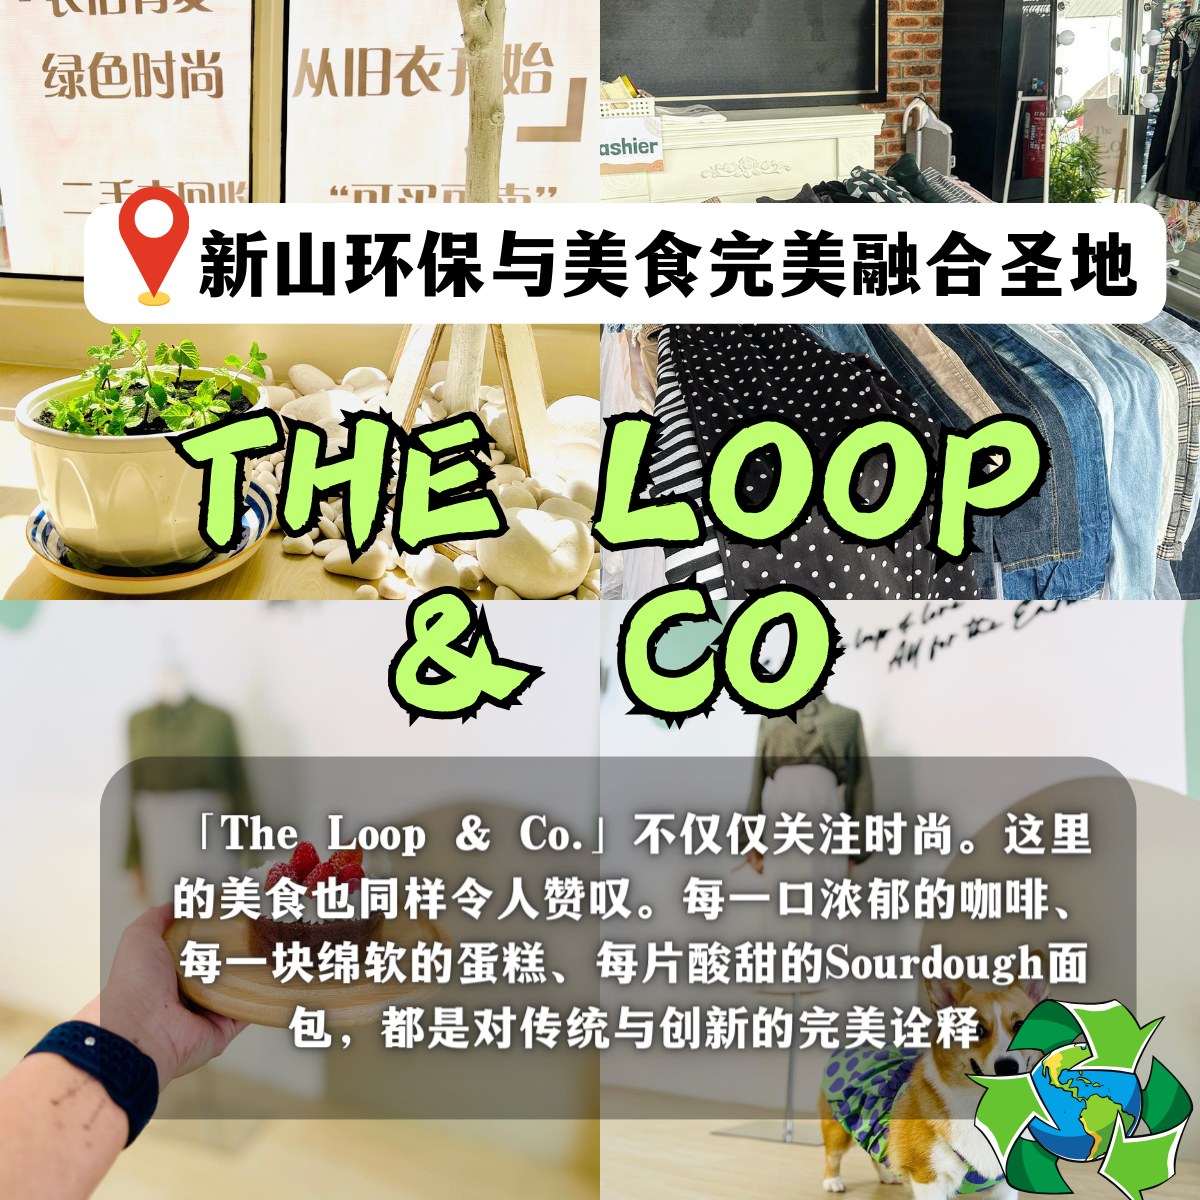 The Loop & Co.